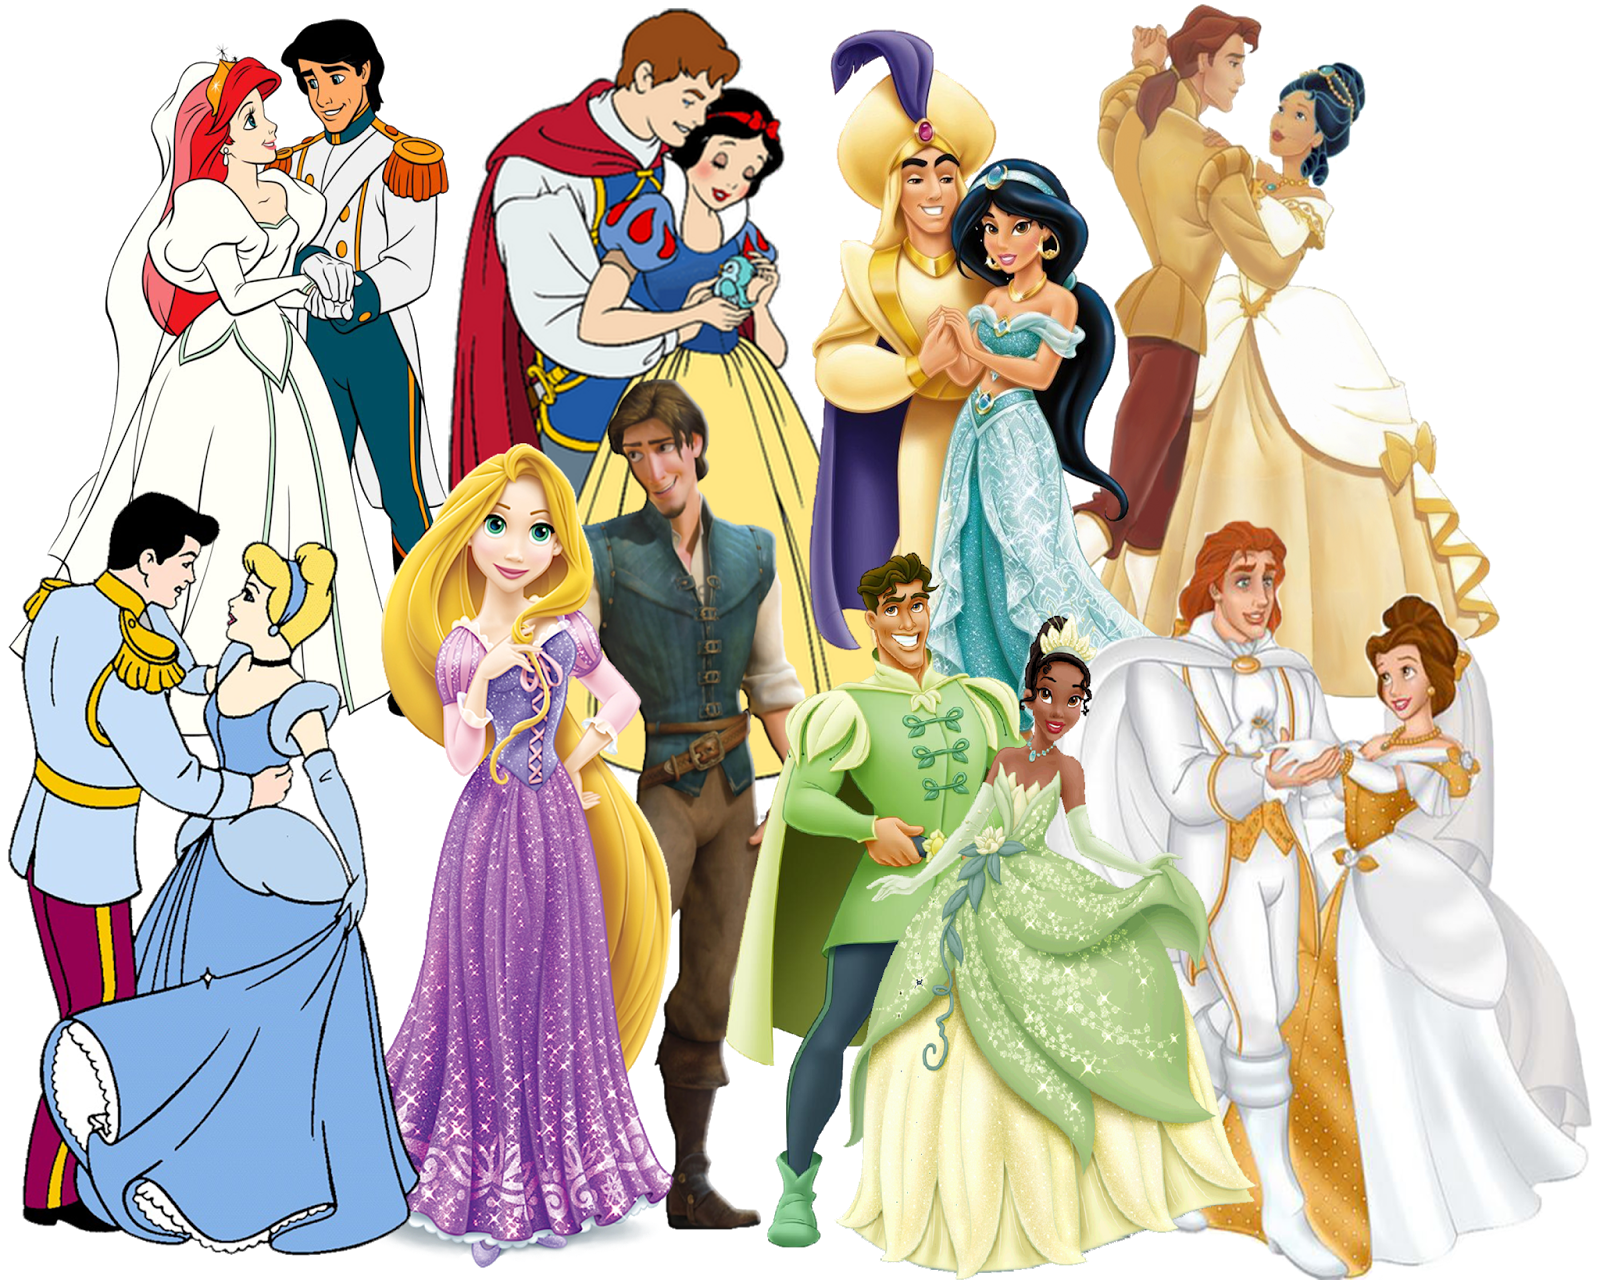 Принцессы википедия. Принцессы Диснея и их принцы. Принцессы Диснея Мулан с принцем. Принцы Диснея и их принцессы Диснея. Disney принц.